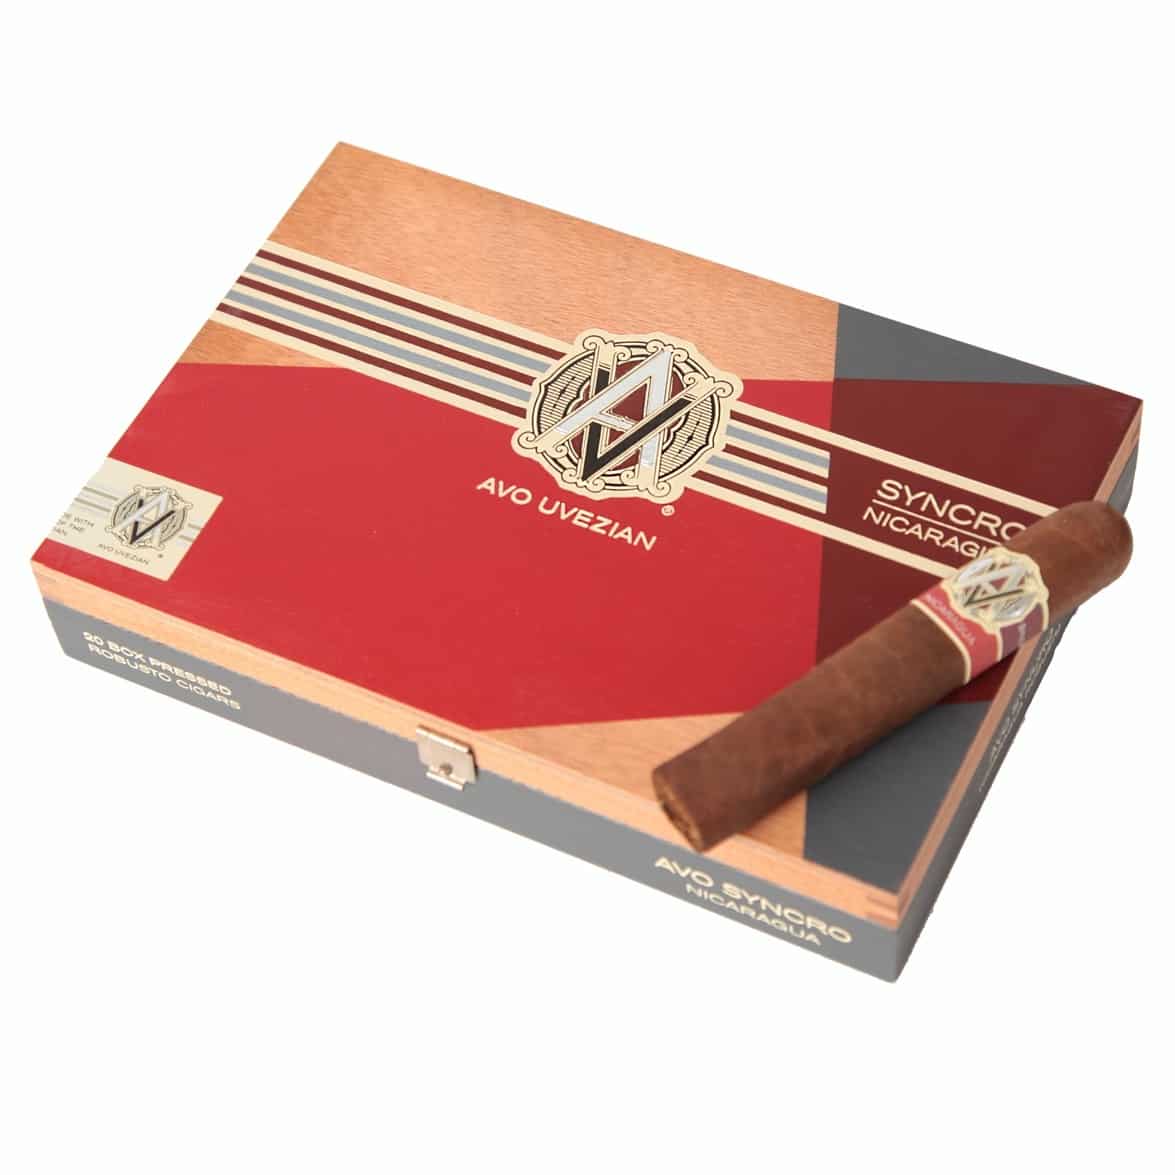 AVO Syncro Nicaragua Cigar